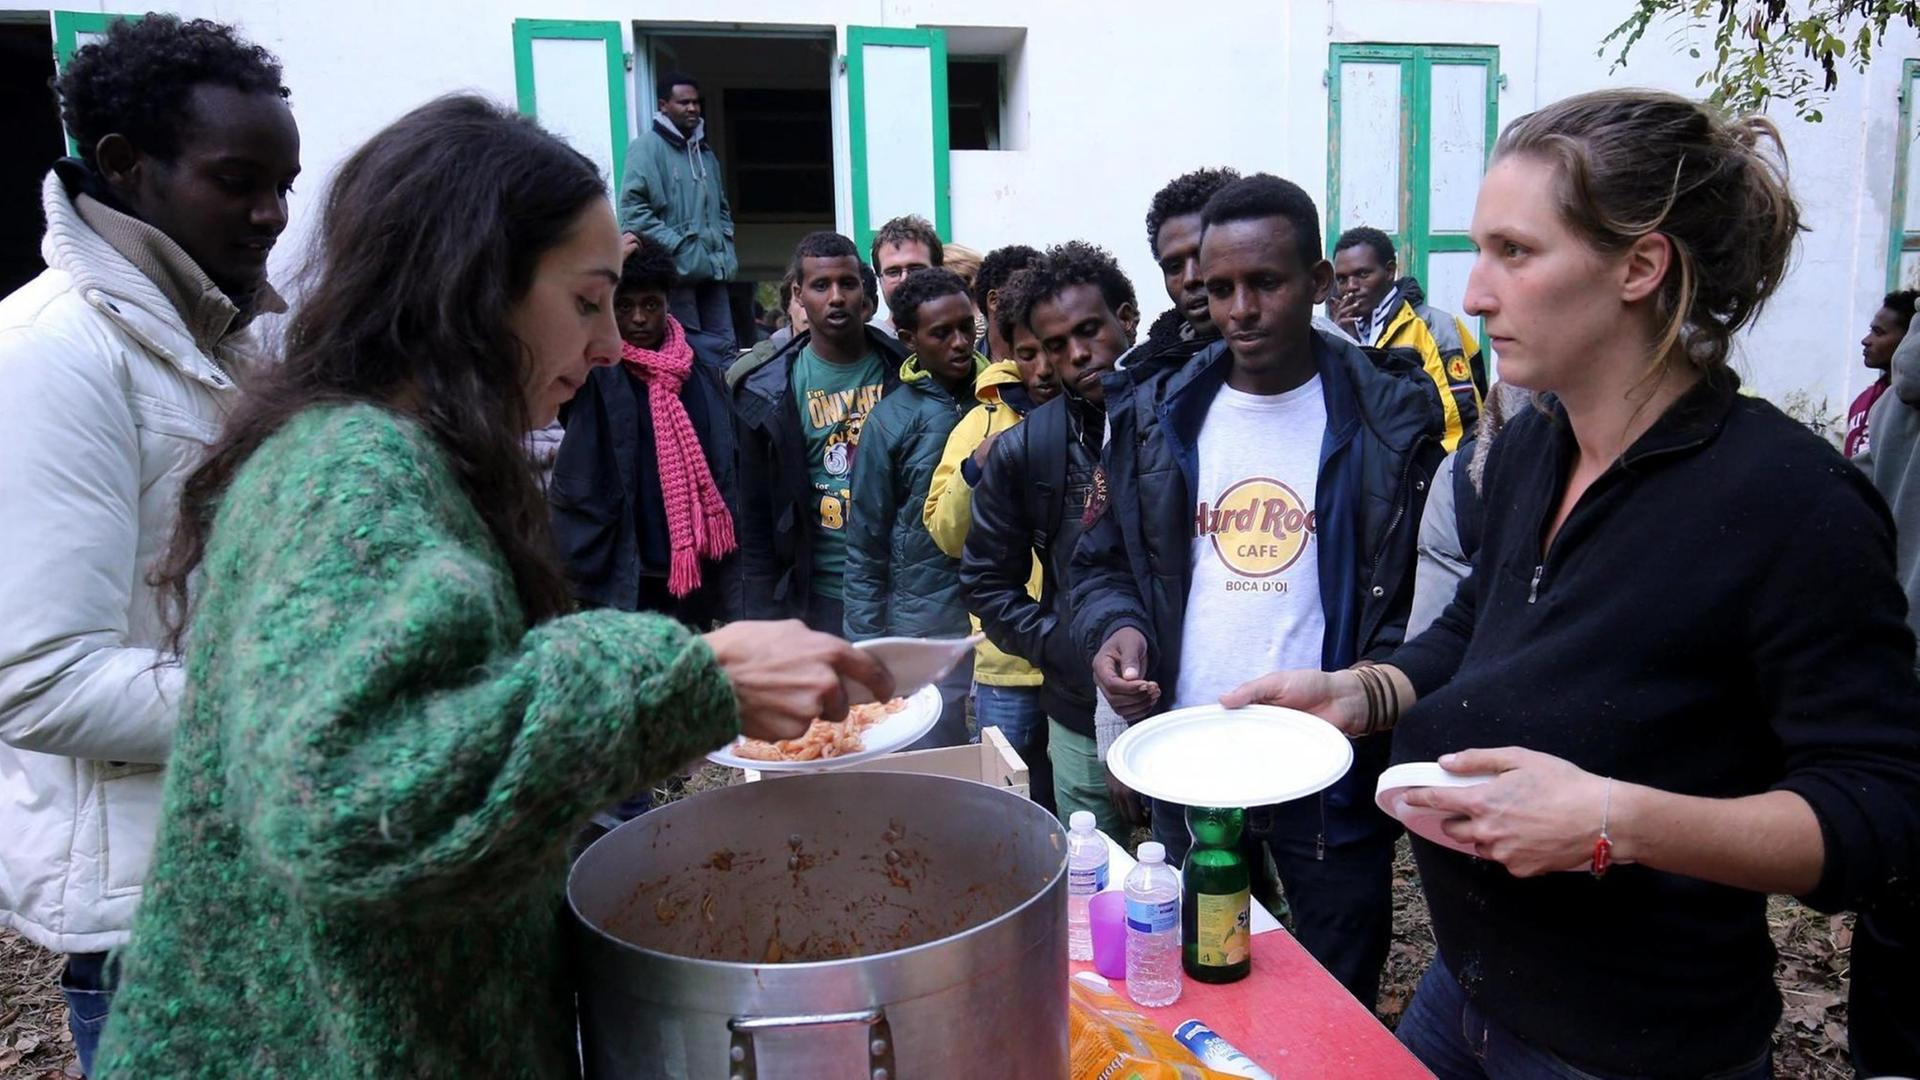 Freiwillige verteilen Essen an Flüchtlinge in einem provisorischen Camp in Saint-Dalmas-de-Tende im äußersten Südosten Frankreichs an der Grenze zu Italien.